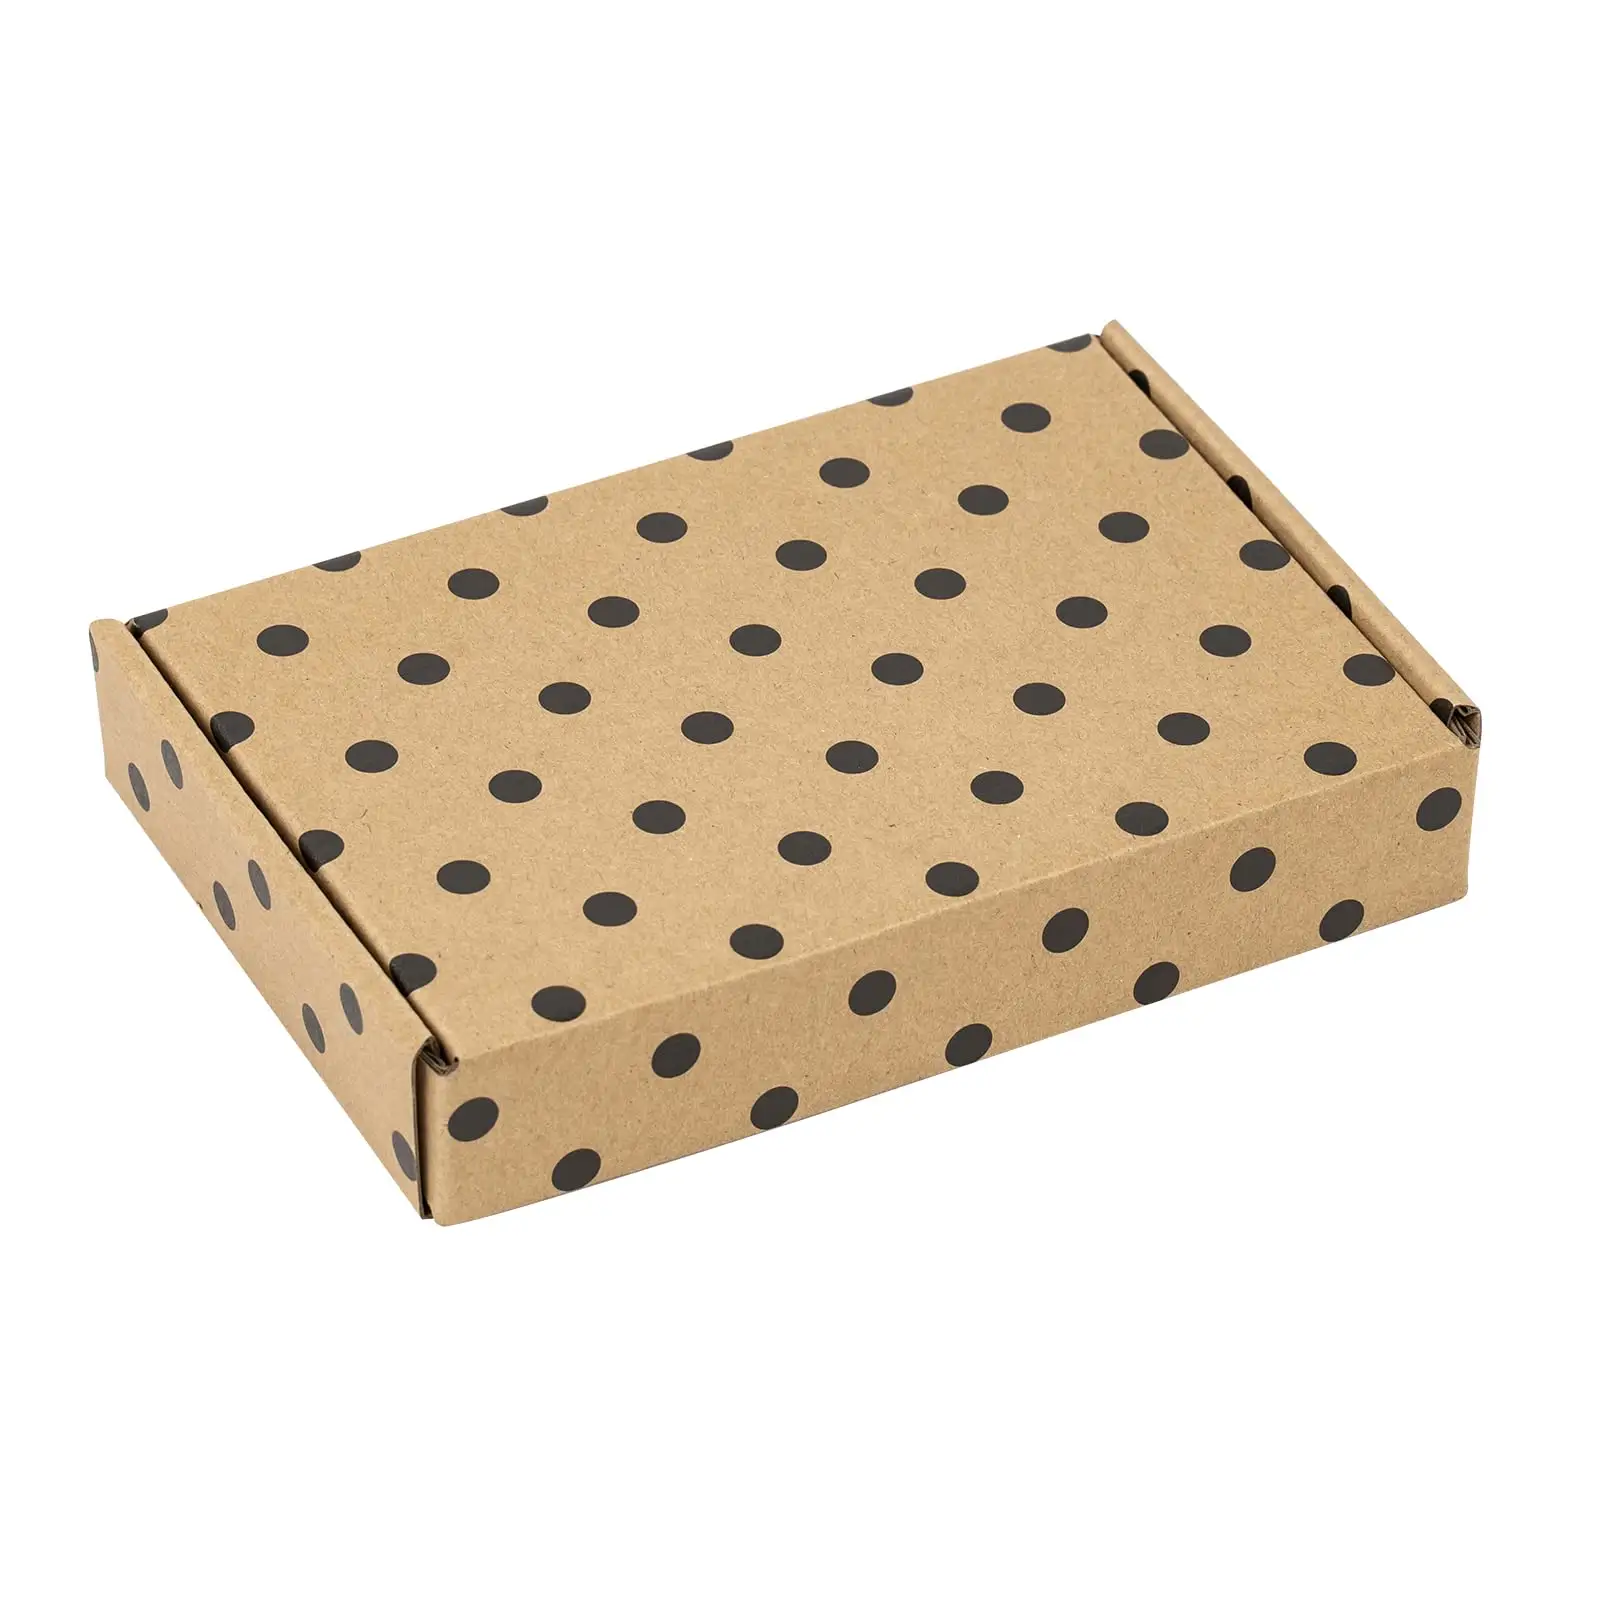 kundenspezifische versandbox kleine verpackungsbox karton faltbare verpackung aus wellpappe versandboxen